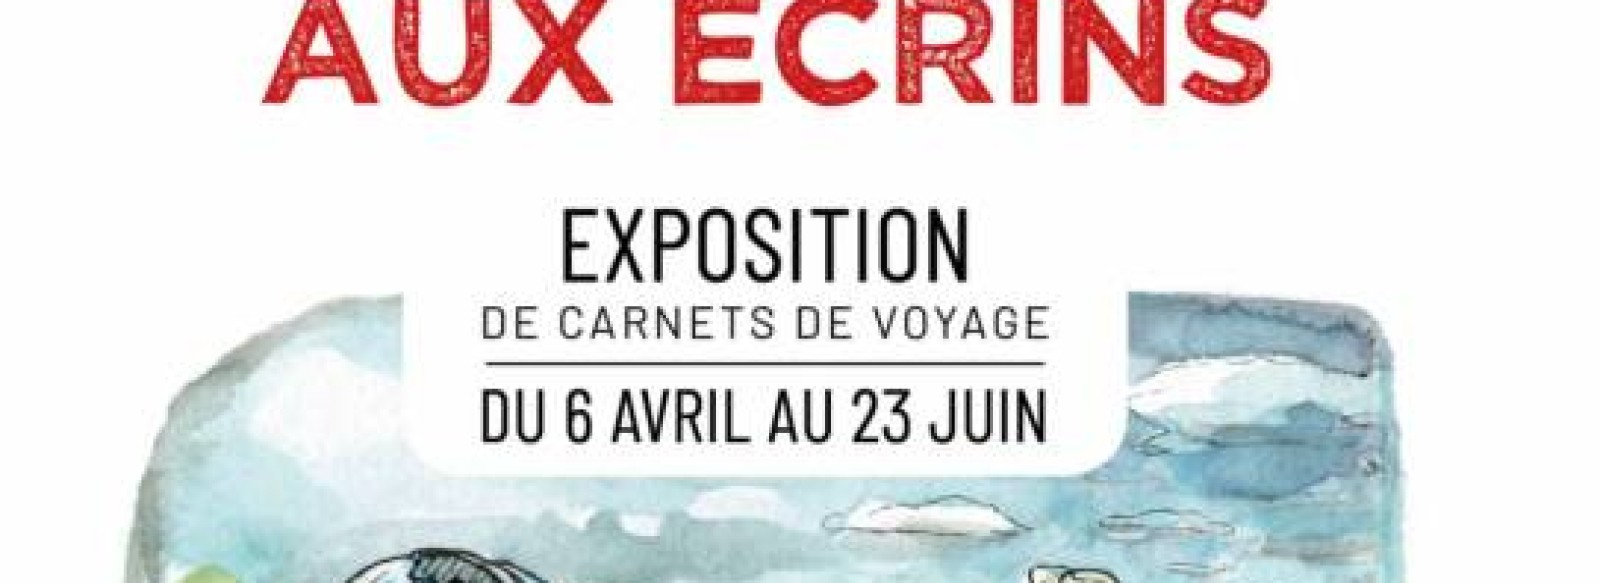 DE LA LOIRE AUX ECRINS - Exposition de croquis de voyage